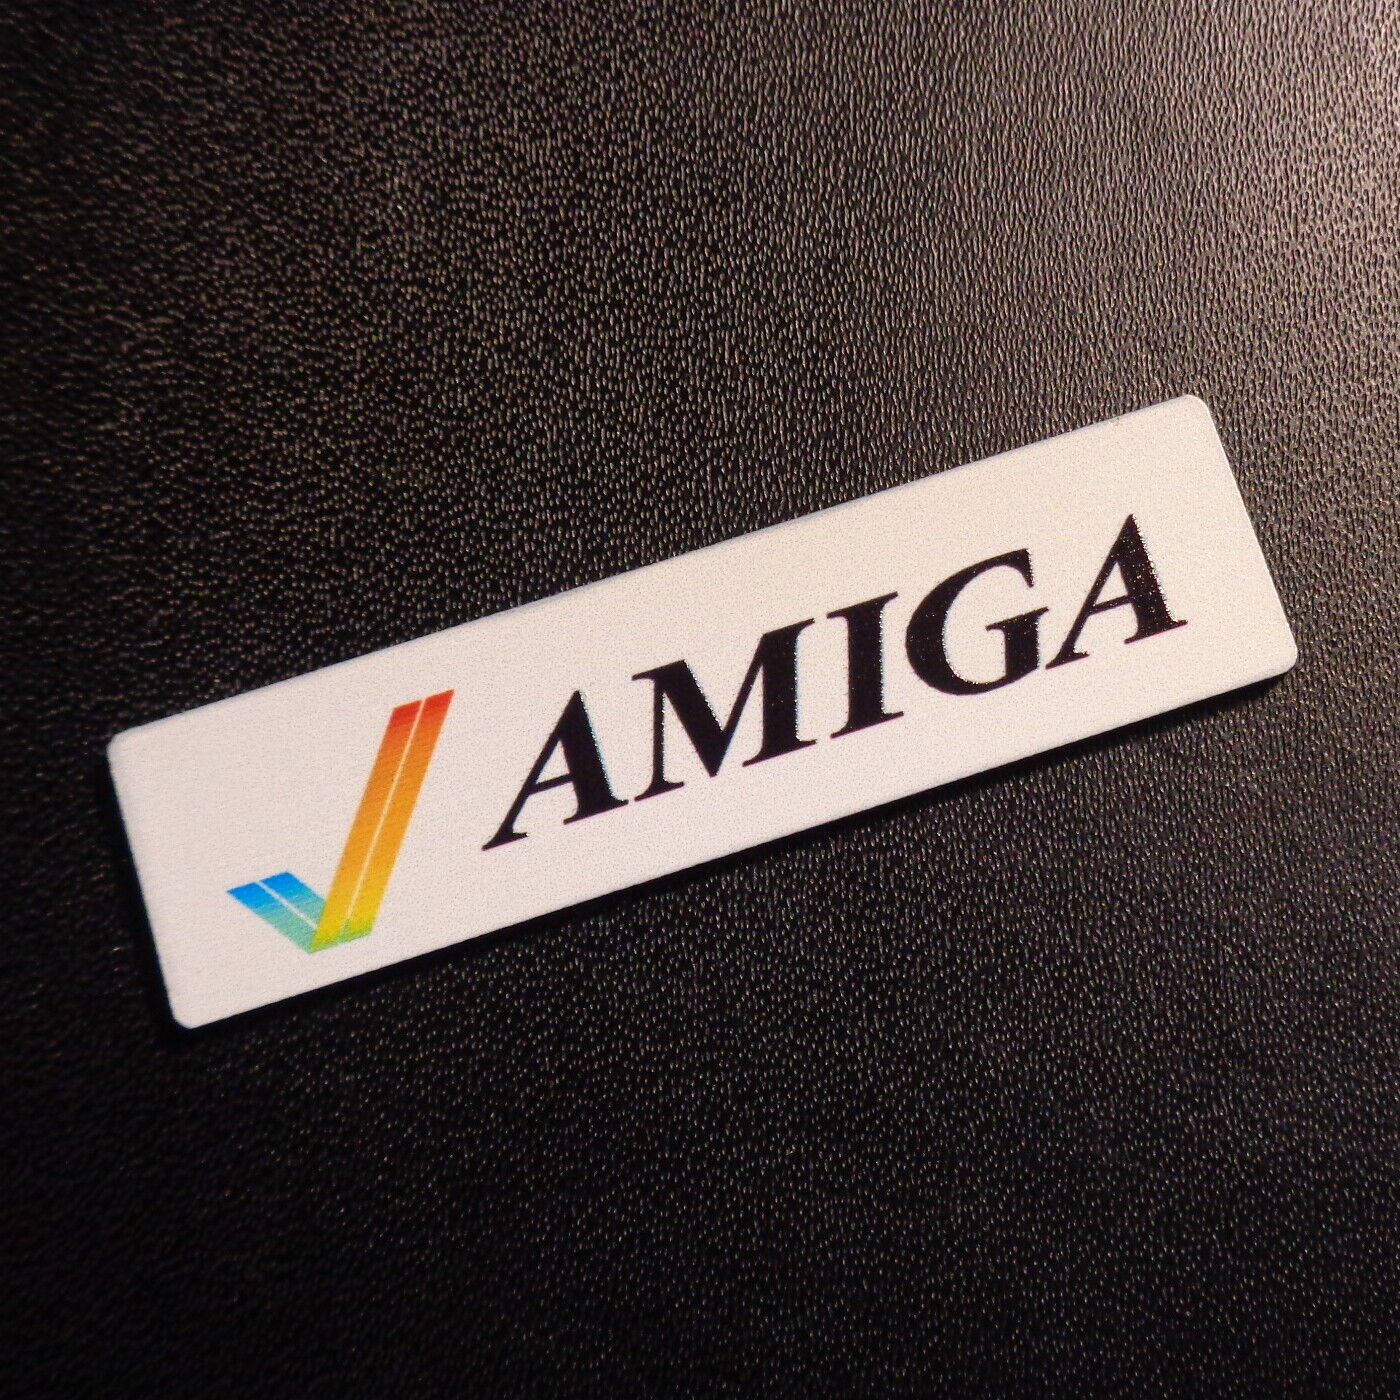 Commodore Amiga 600 1200 Label / Logo / Sticker / Badge 49 x 13 mm [459b]